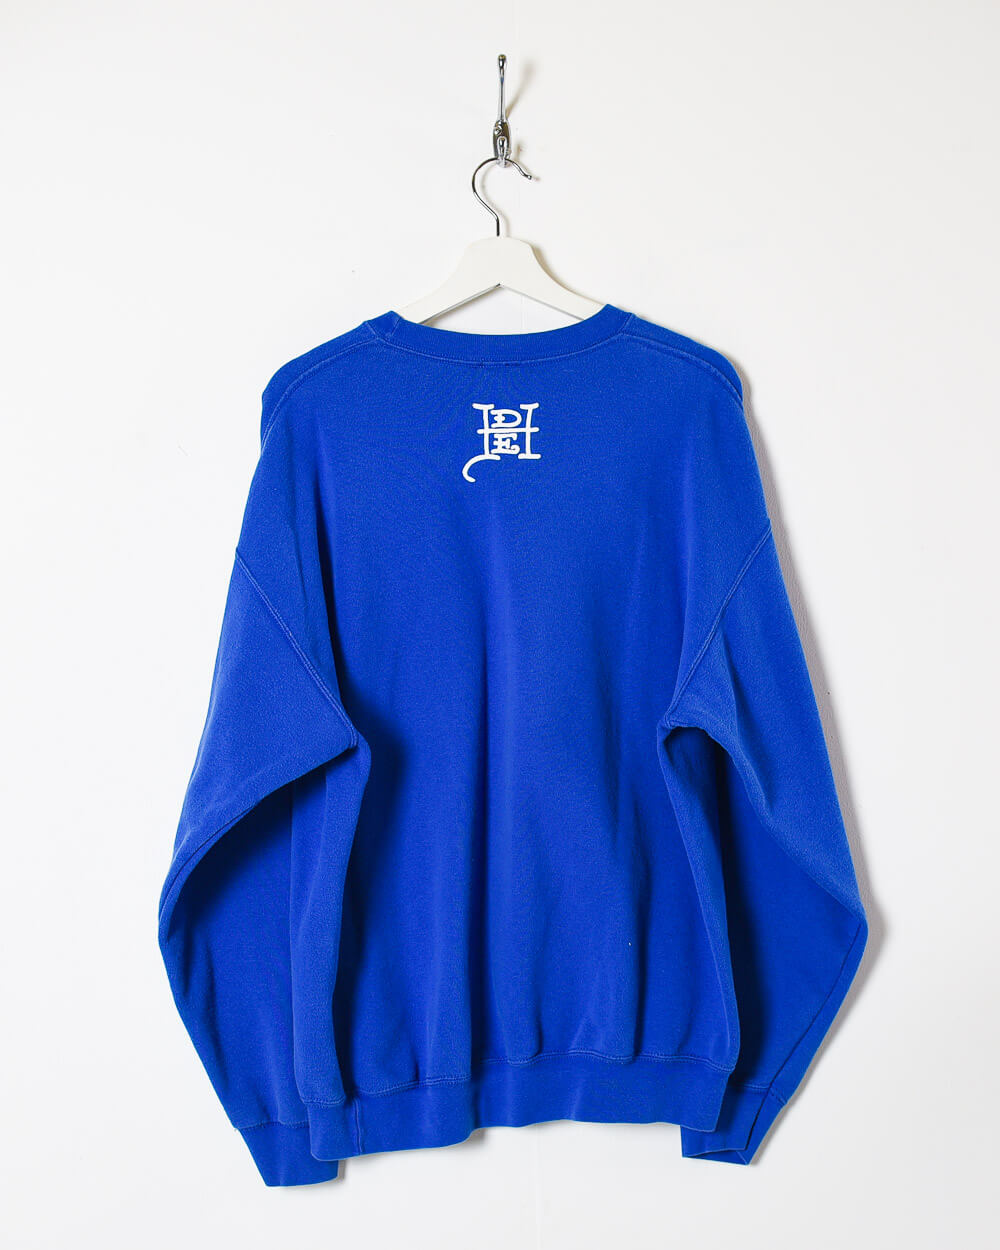 Blue Ed Hardy Sweatshirt - X-Large